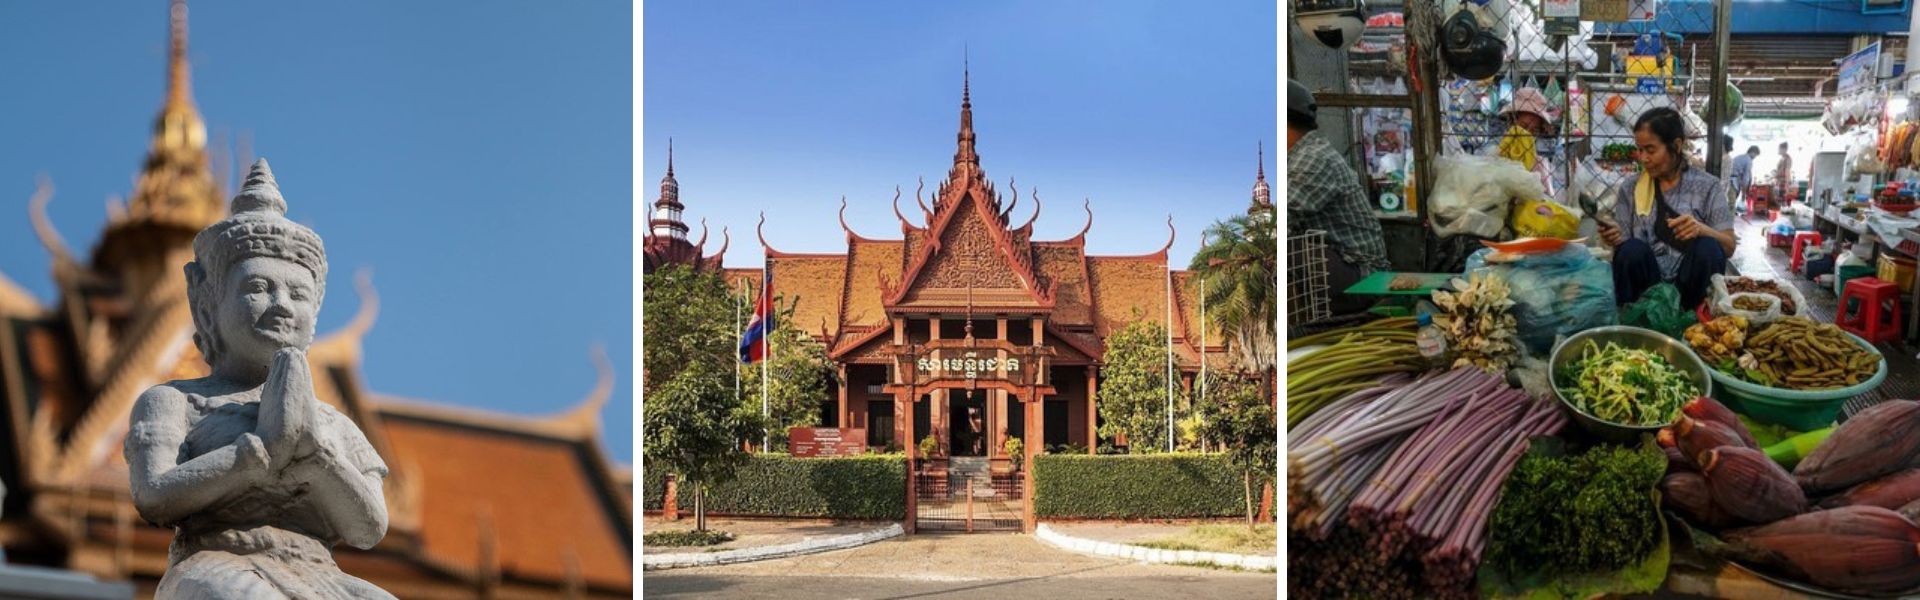 Phnom Penh: Sehenswürdigkeiten und Aktivitäten  | Kambodscha Reisen